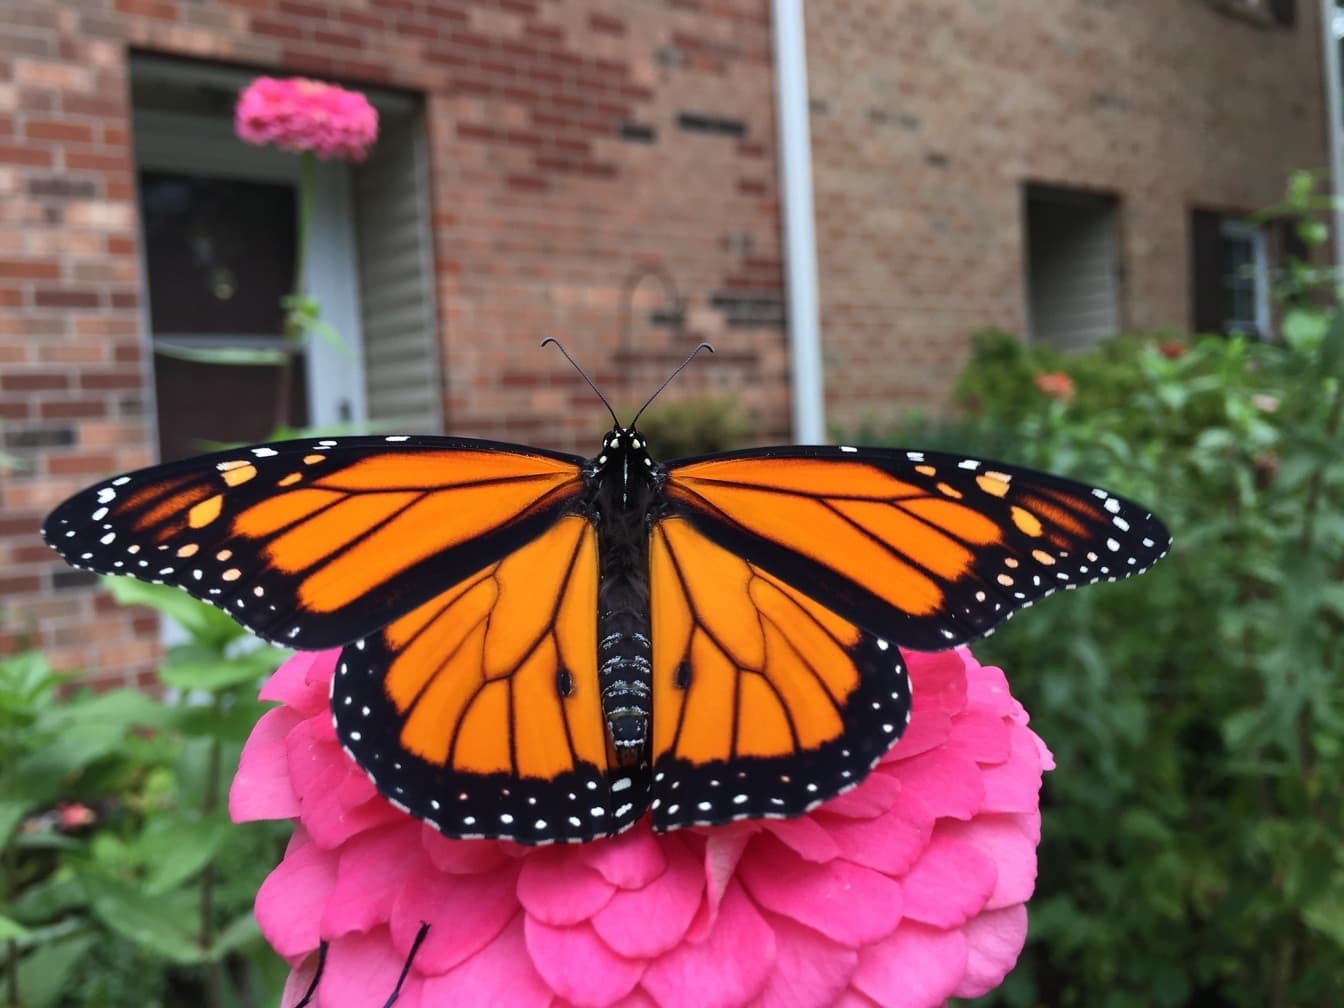 De mannelijke monarchvlinder rust op een roze bloem